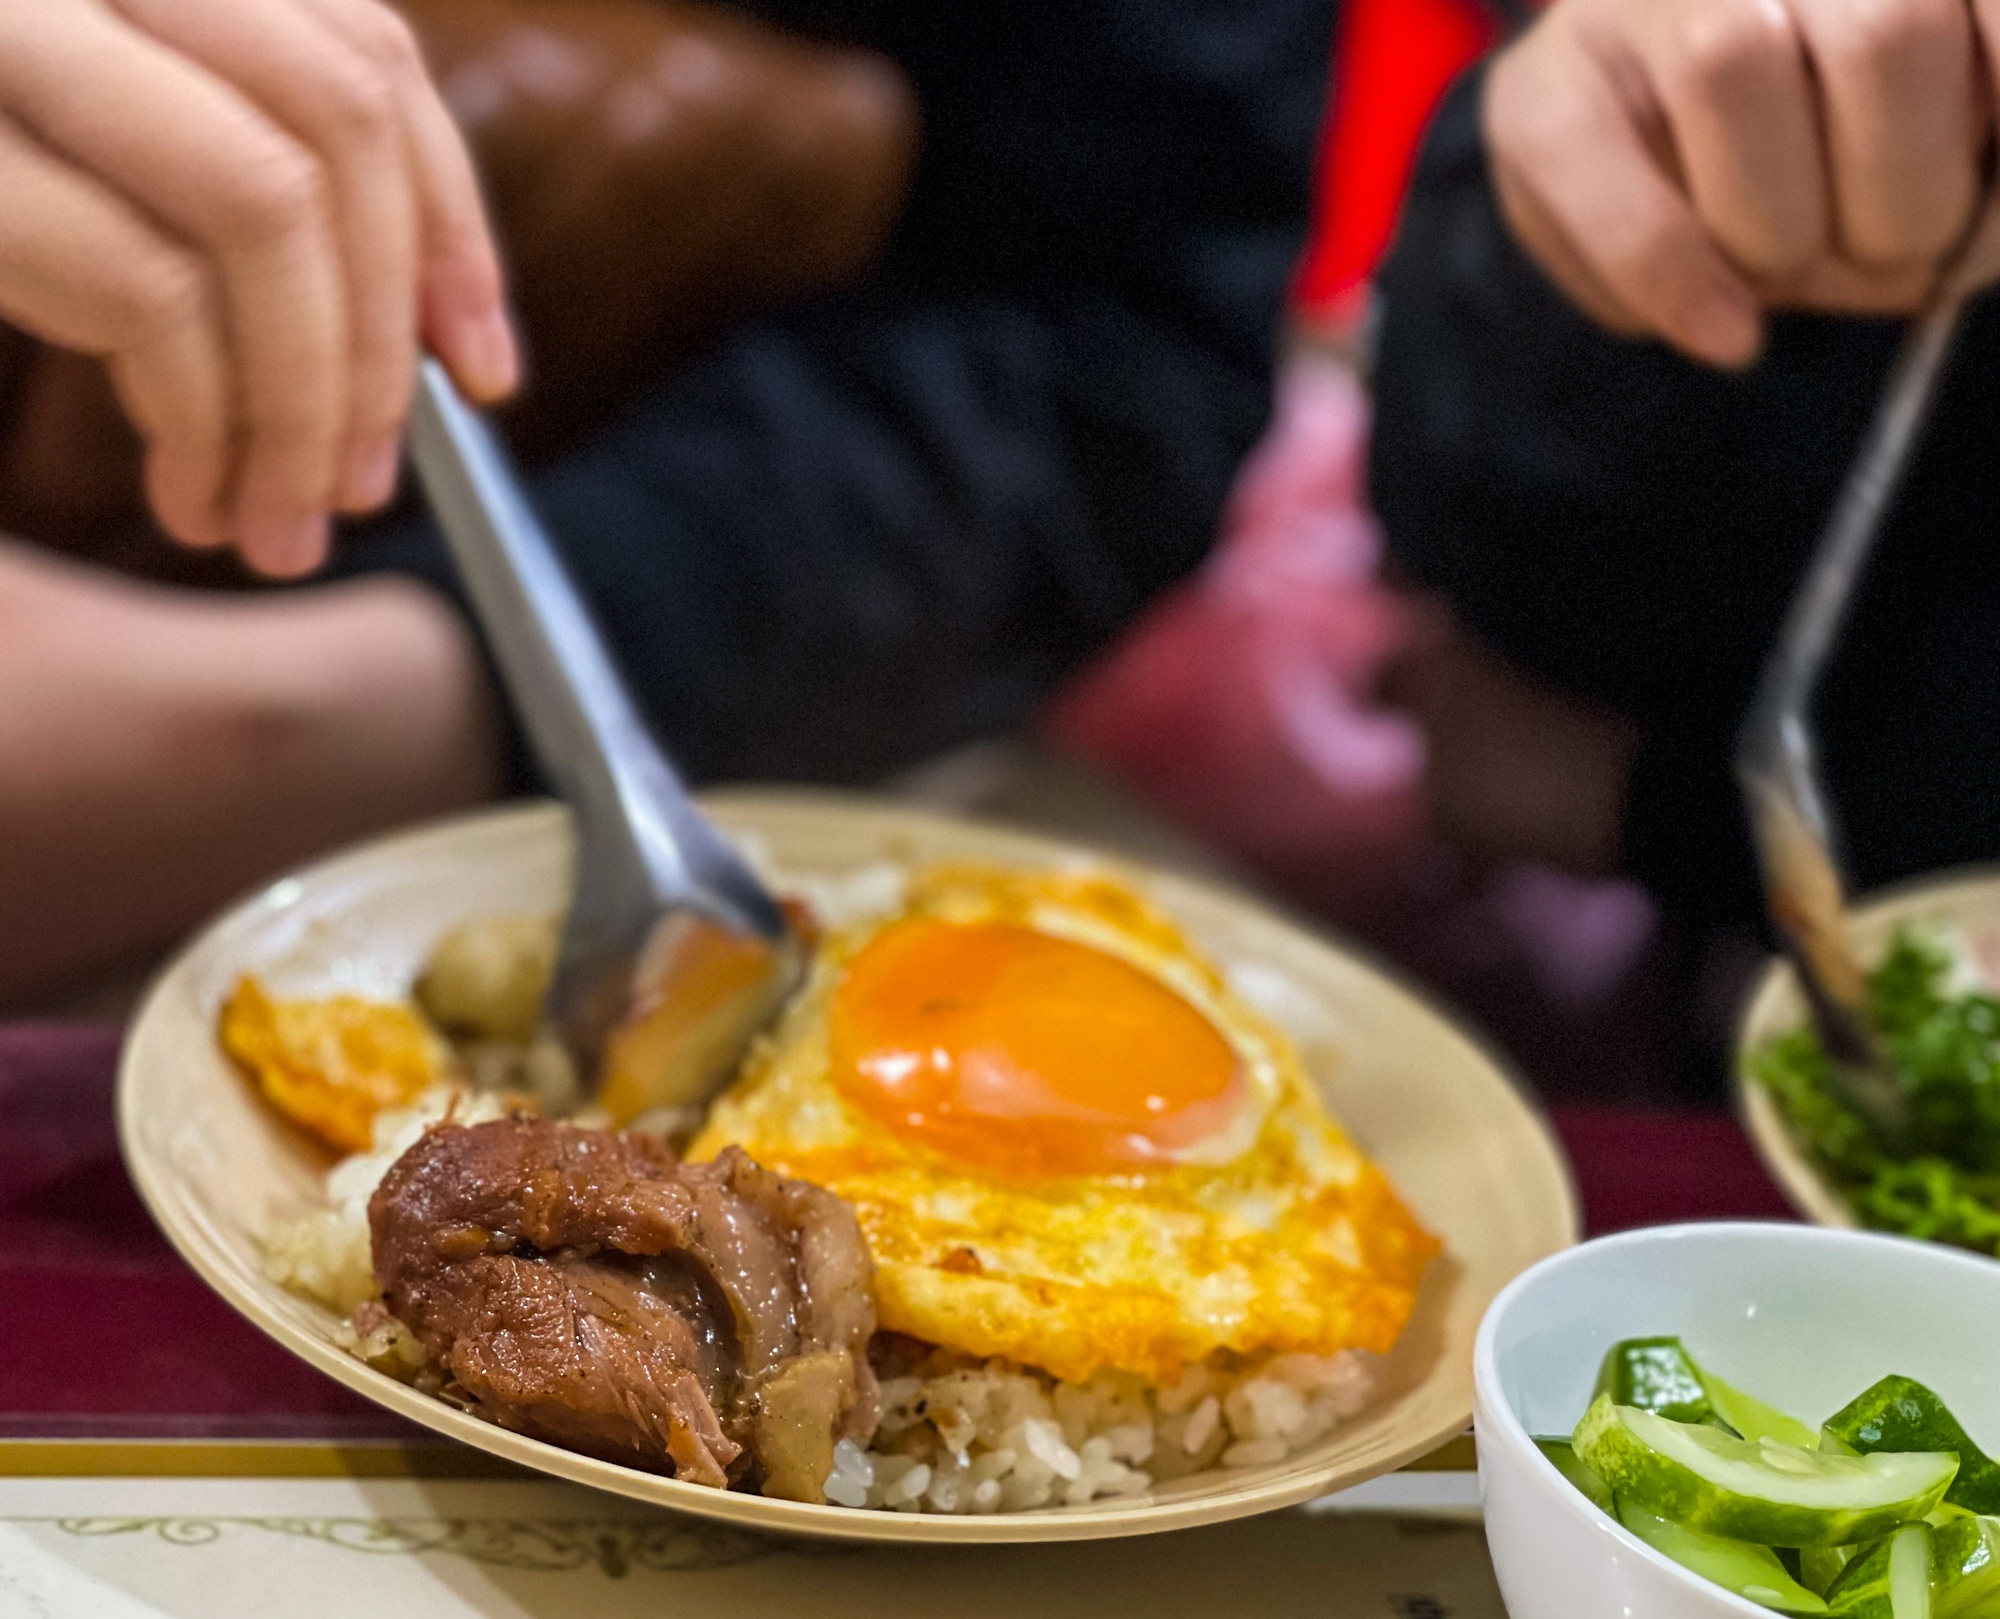 Cặp vợ chồng U70 bán món xôi thịt độc nhất ở Hà Nội - Ảnh 5.